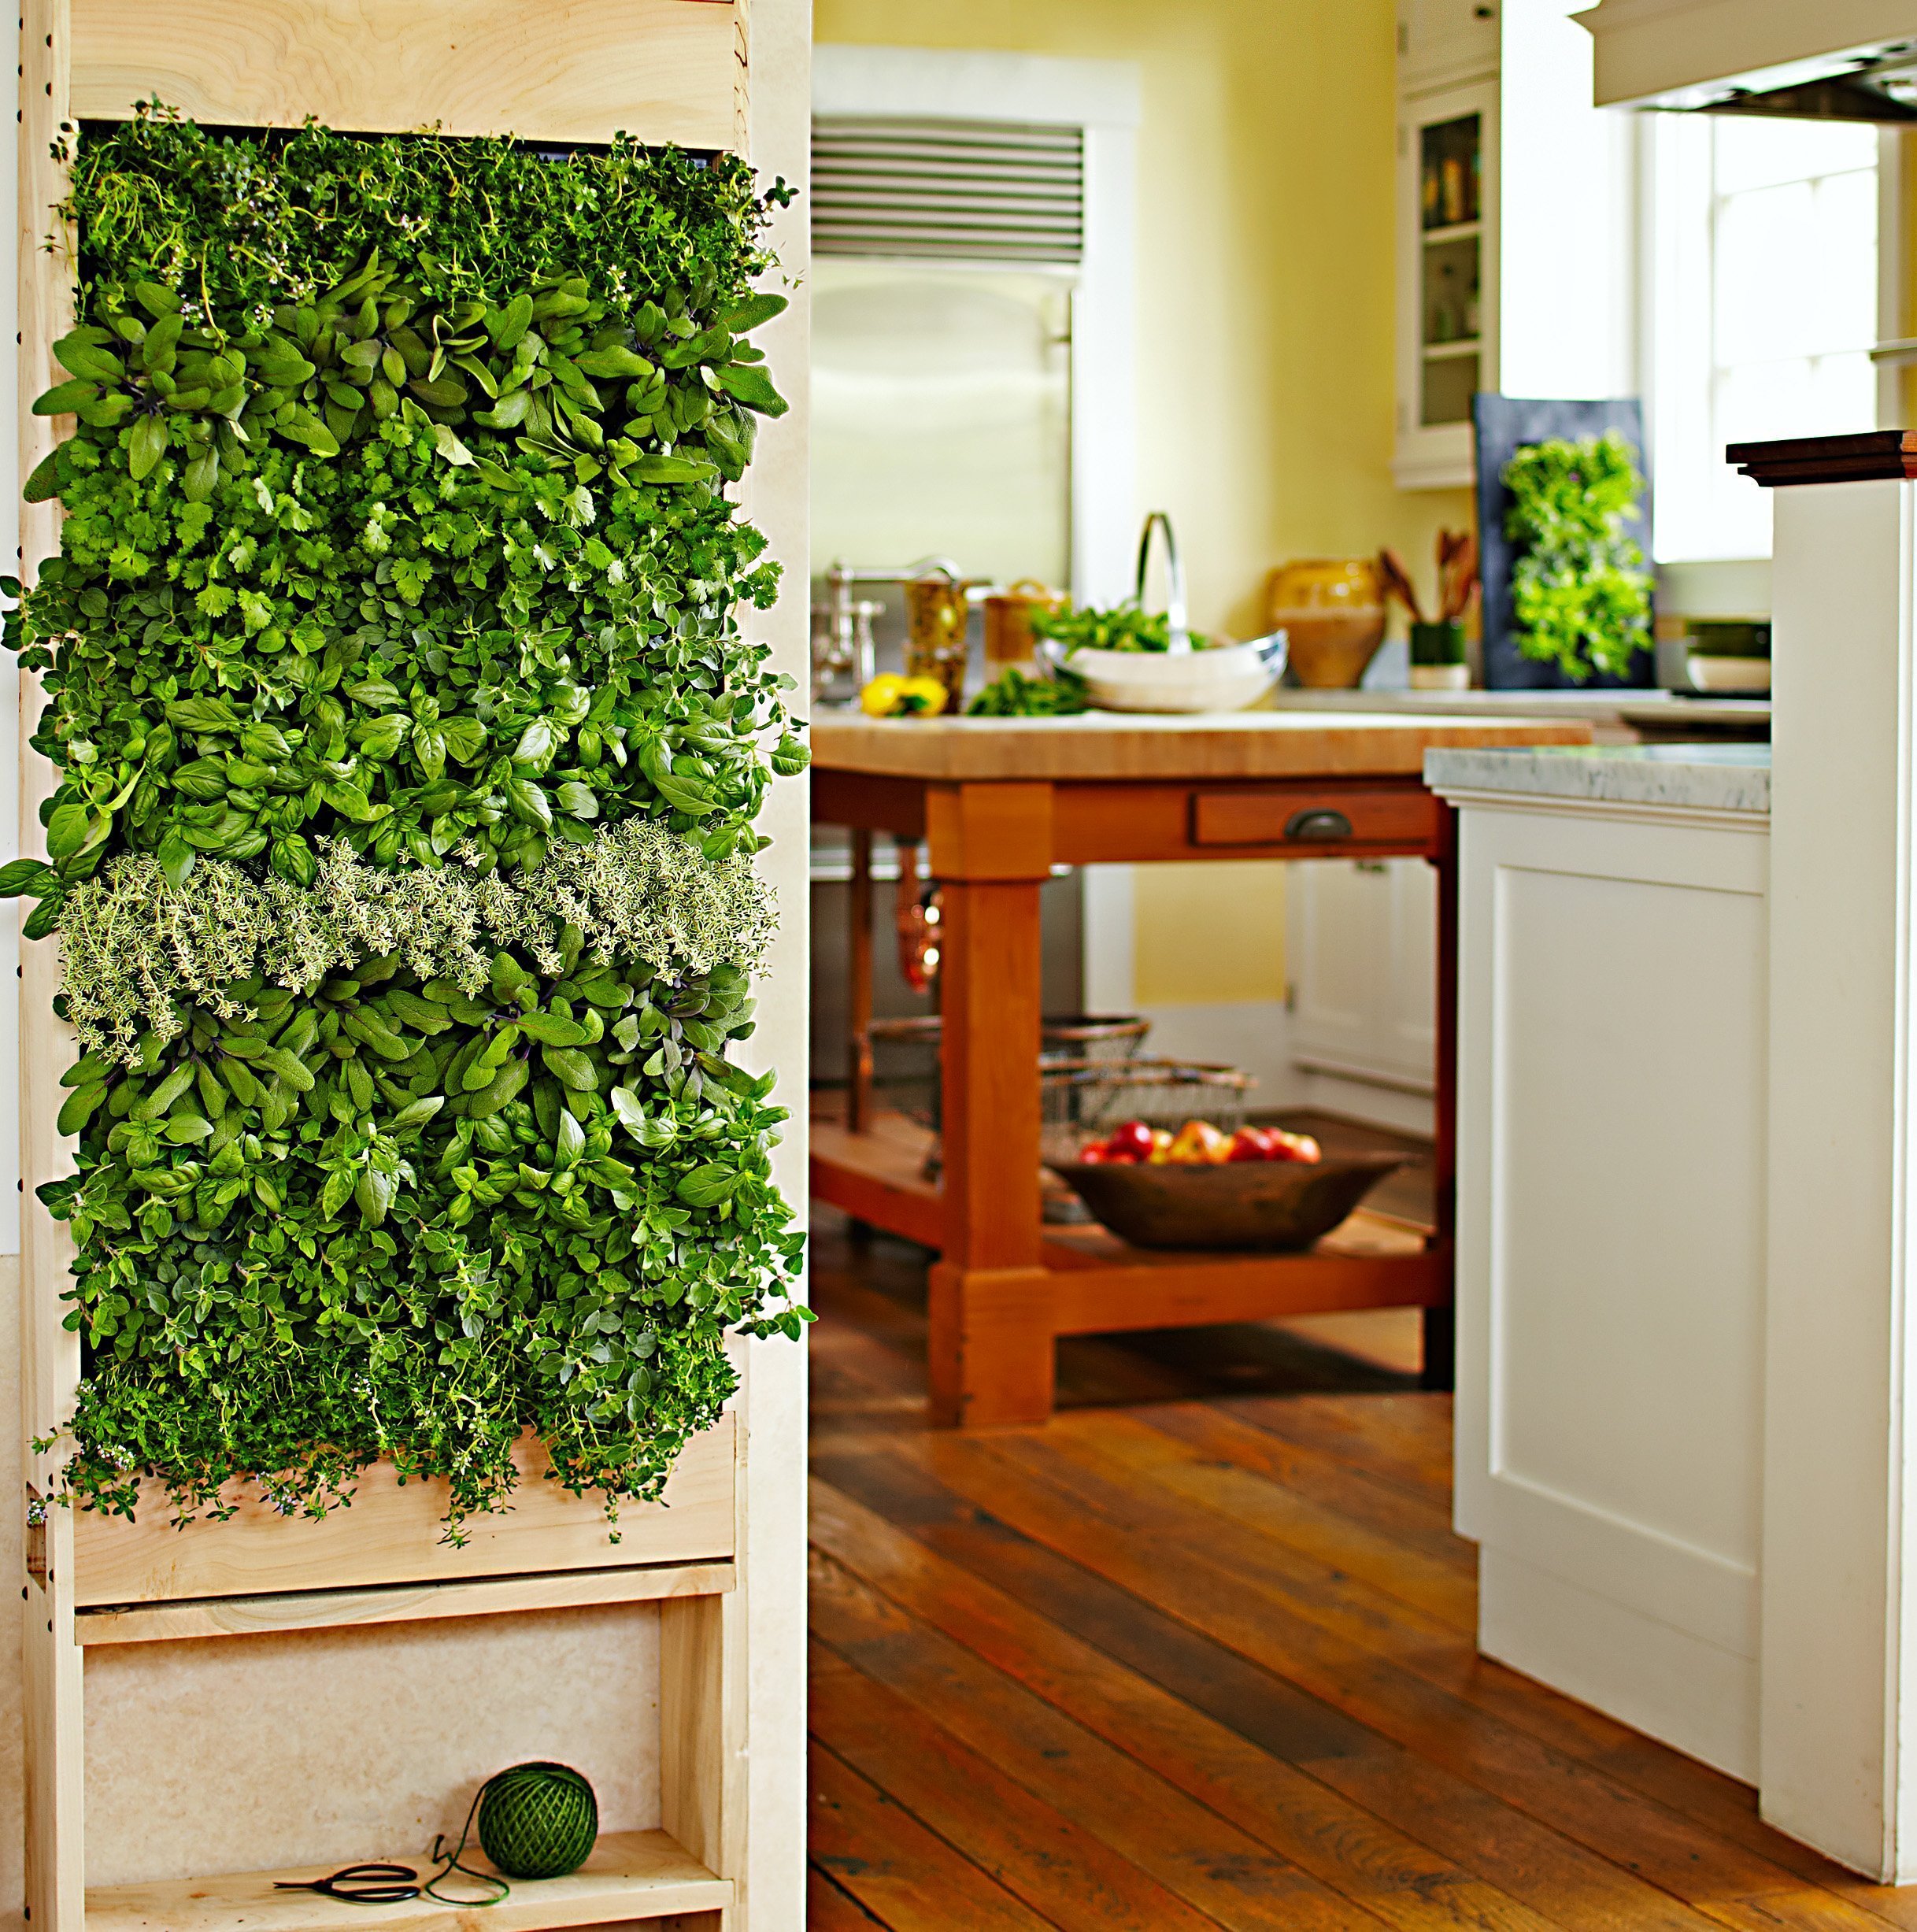 Mobilní zelená stěna může skrývat třeba kuchyňské bylinky.